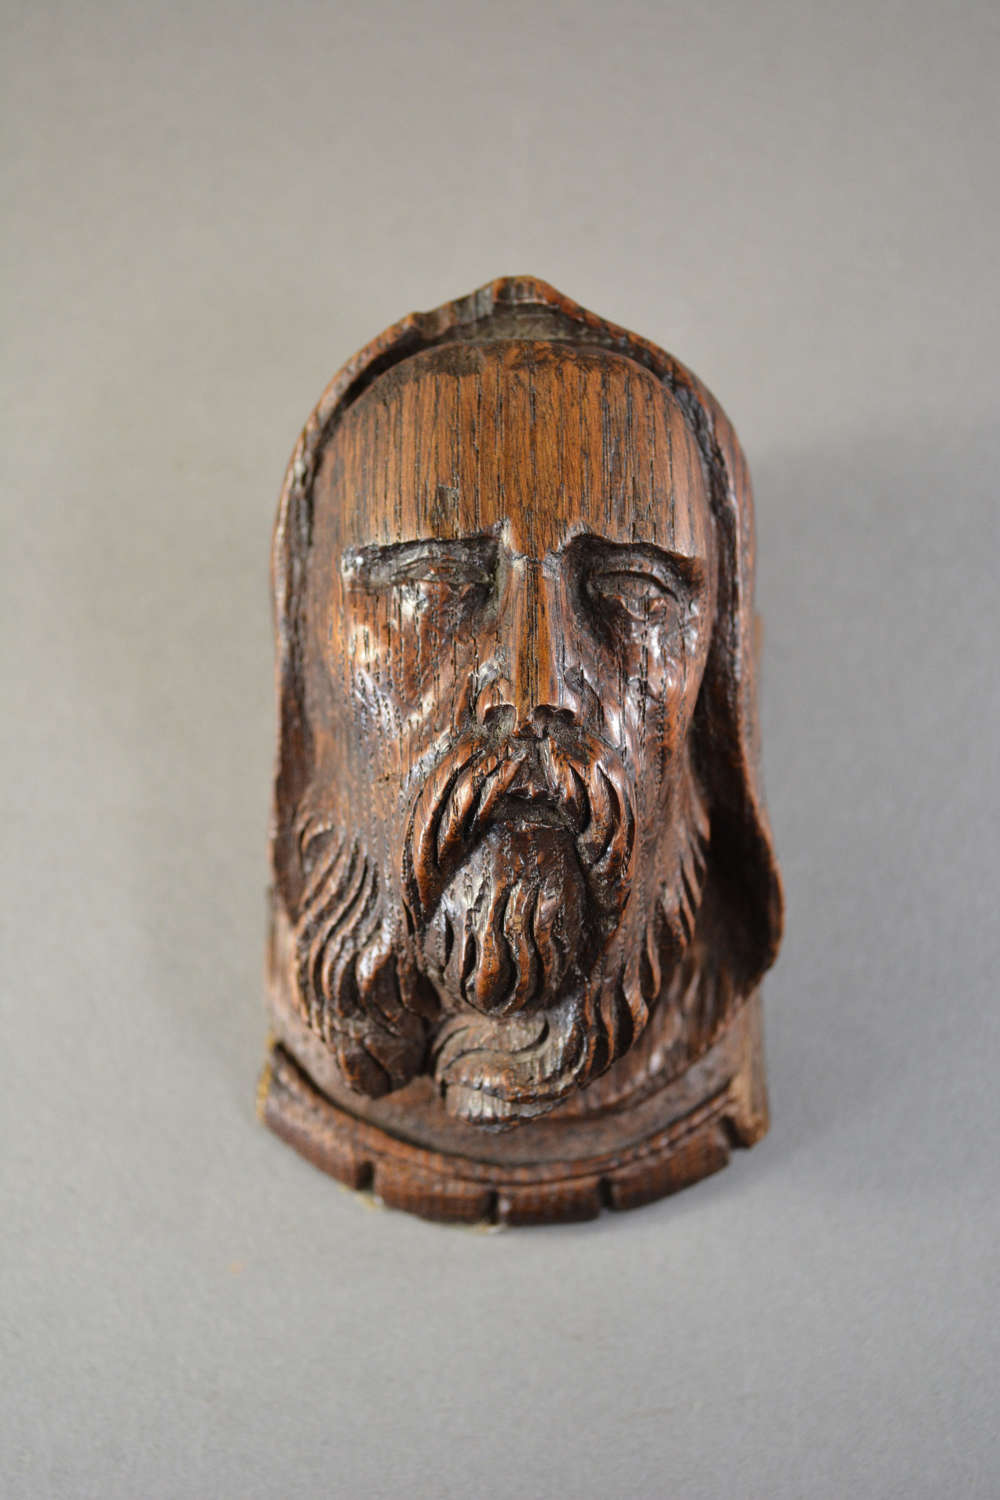 Carved oak hooded bearded man head corbel